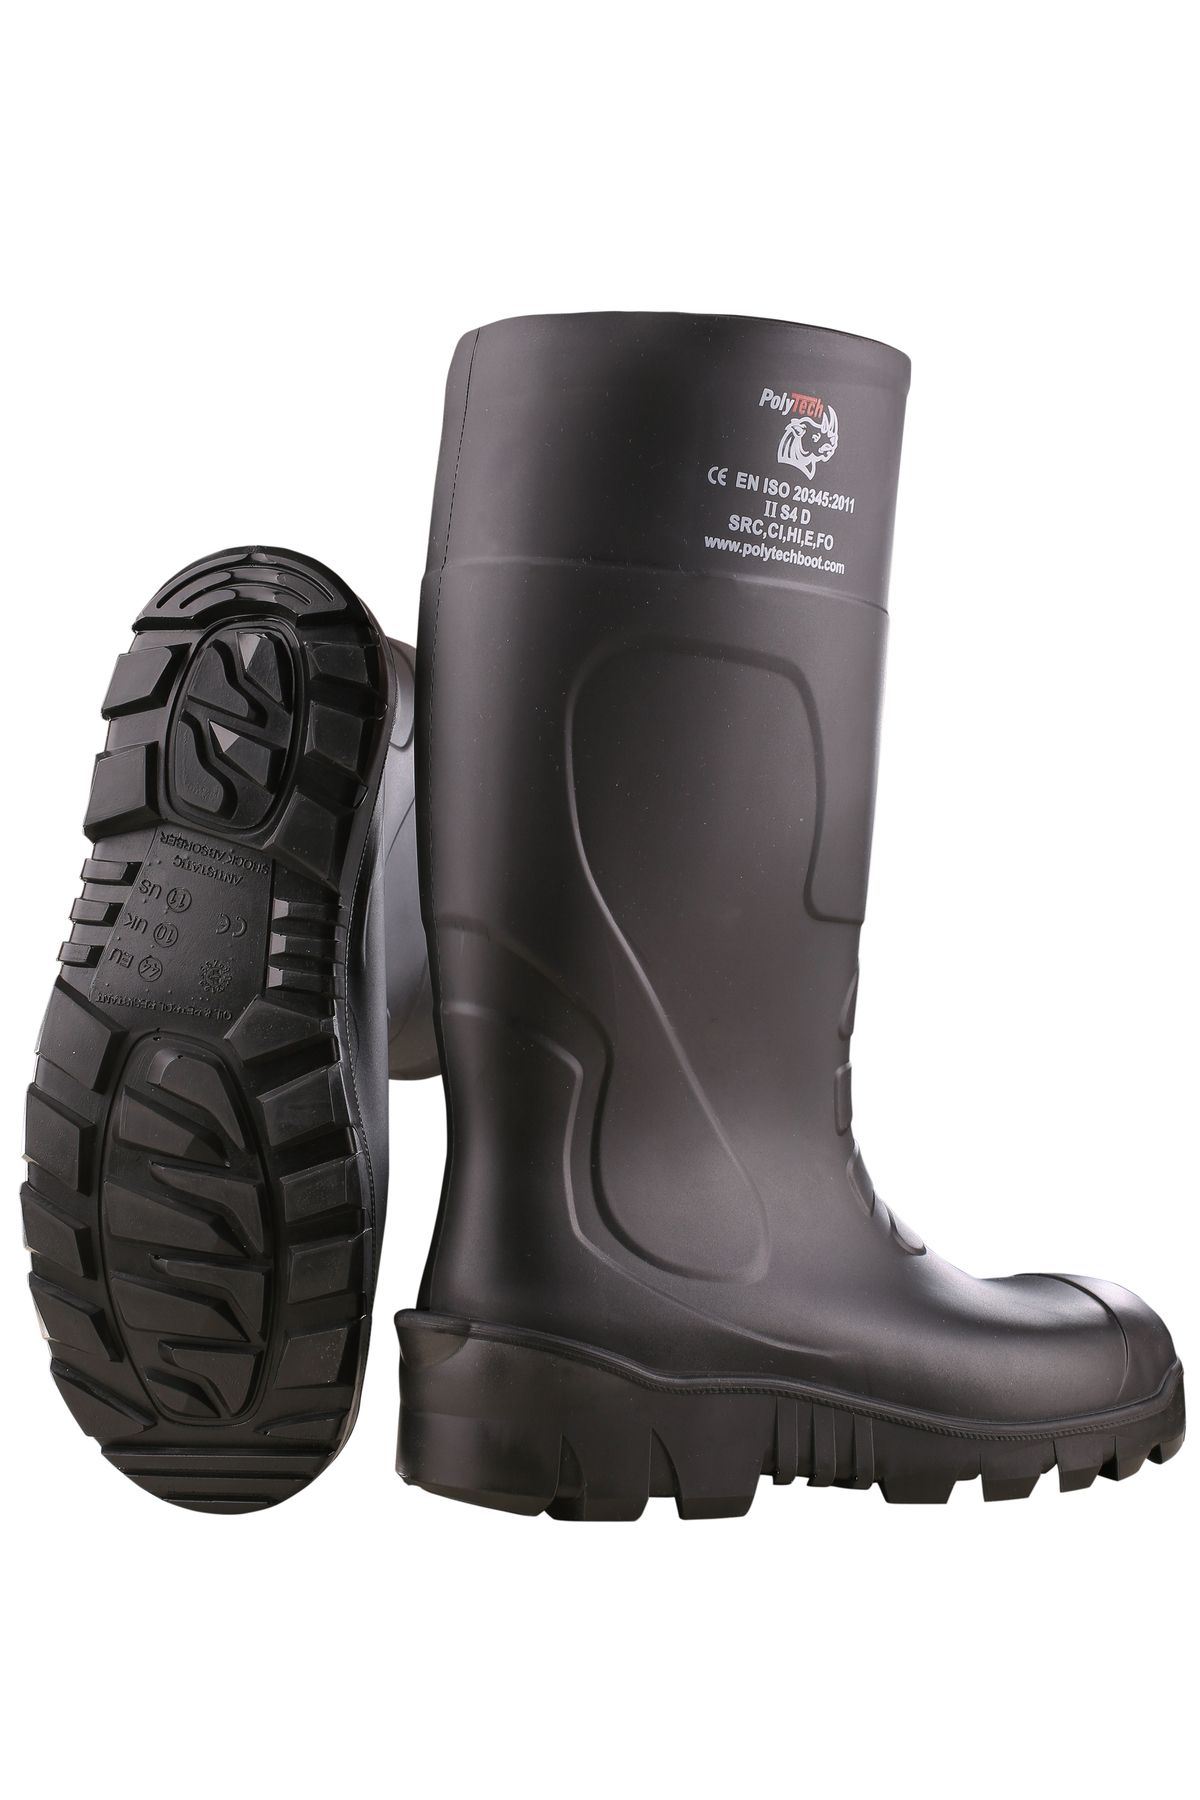 POLYTECH Boot S5 Çelik Burunlu + Çelik Tabanlı Poliüretan Çizme, PU Çizme